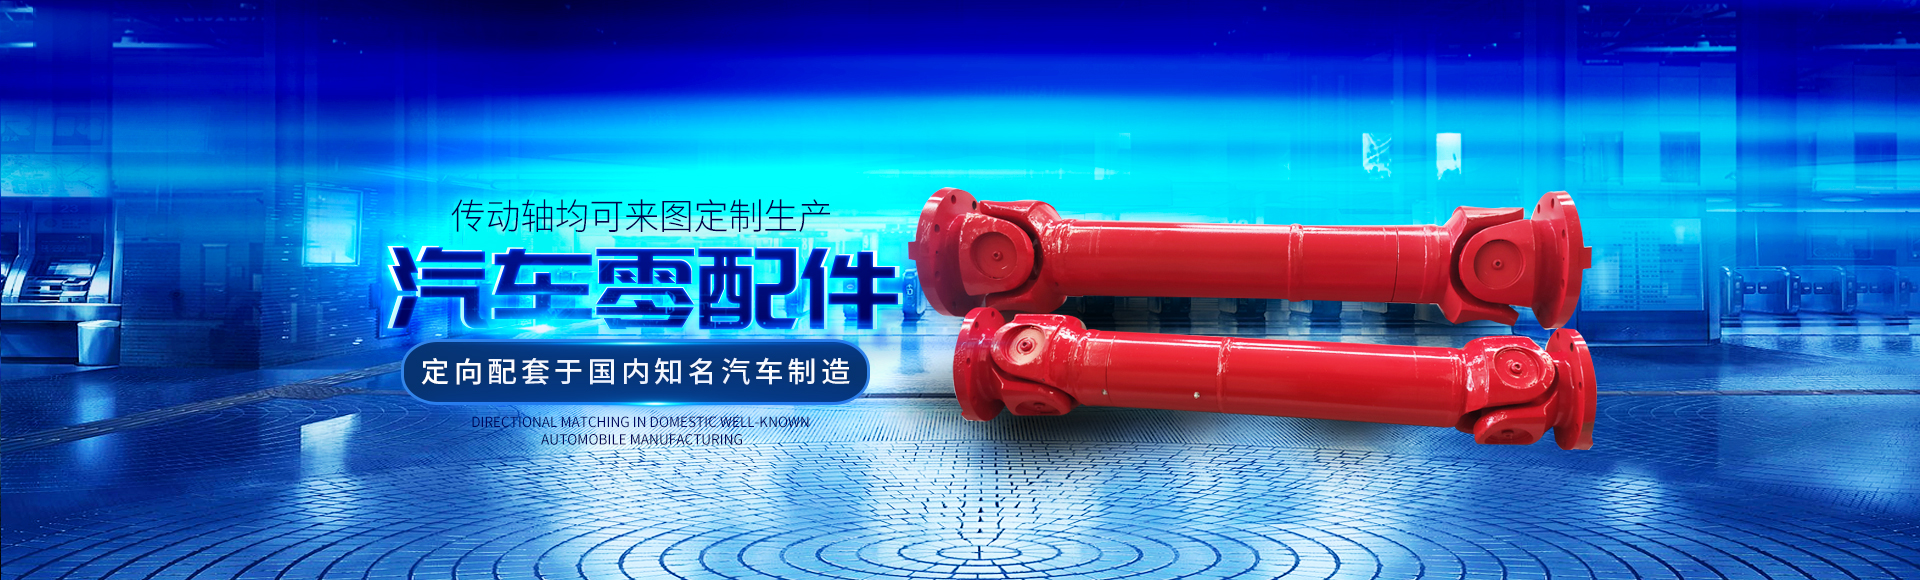 衡陽市祝海機械有限公司_湖南汽車零配件生產銷售|湖南傳動軸生產銷售